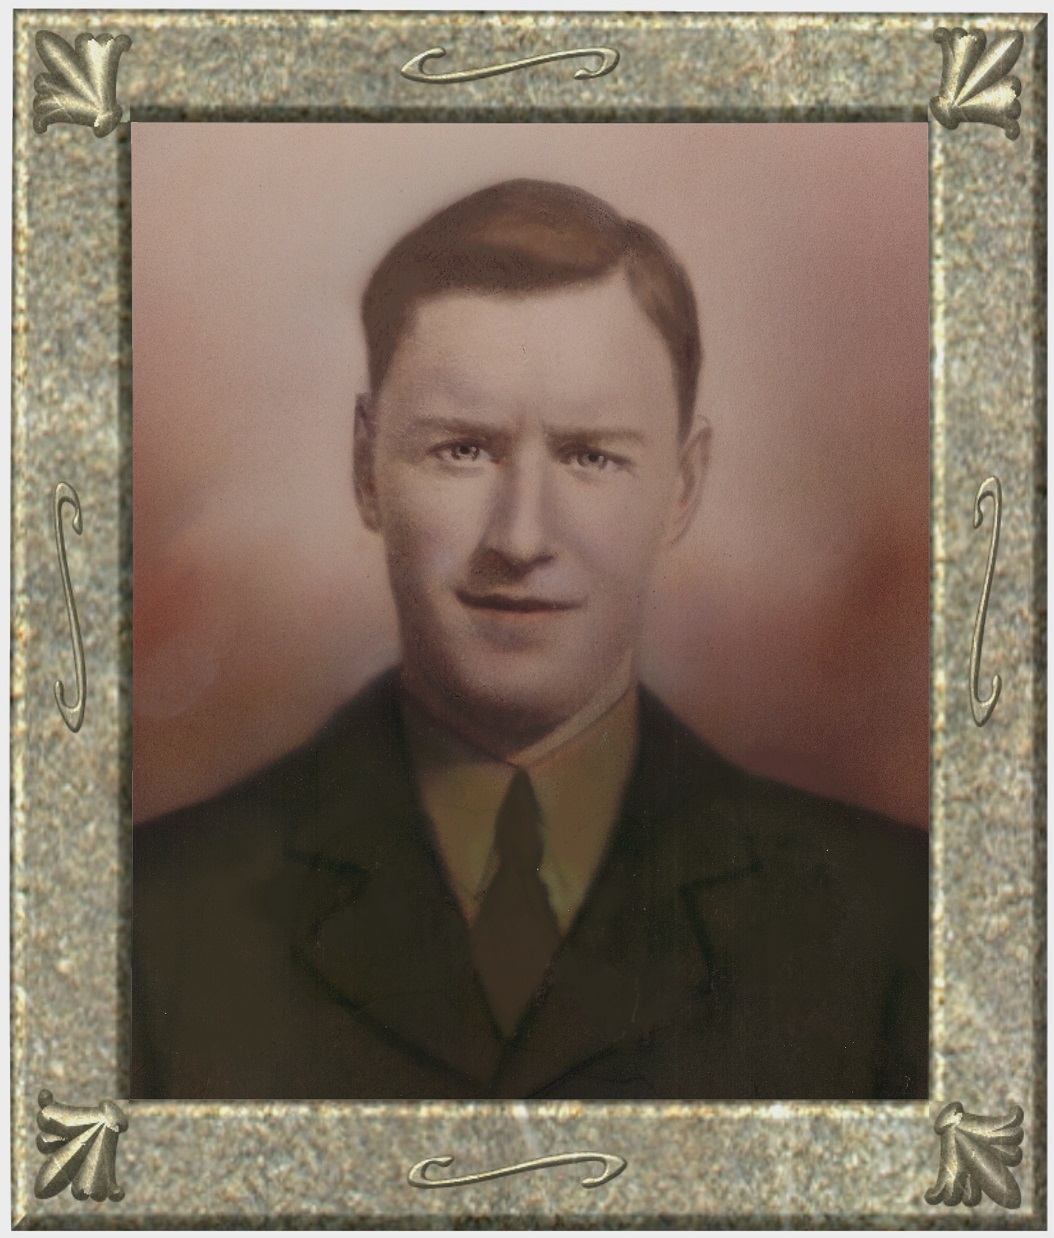 Projet de recherche sur Arthur Joseph Martin, mort lors de la Seconde Guerre mondiale